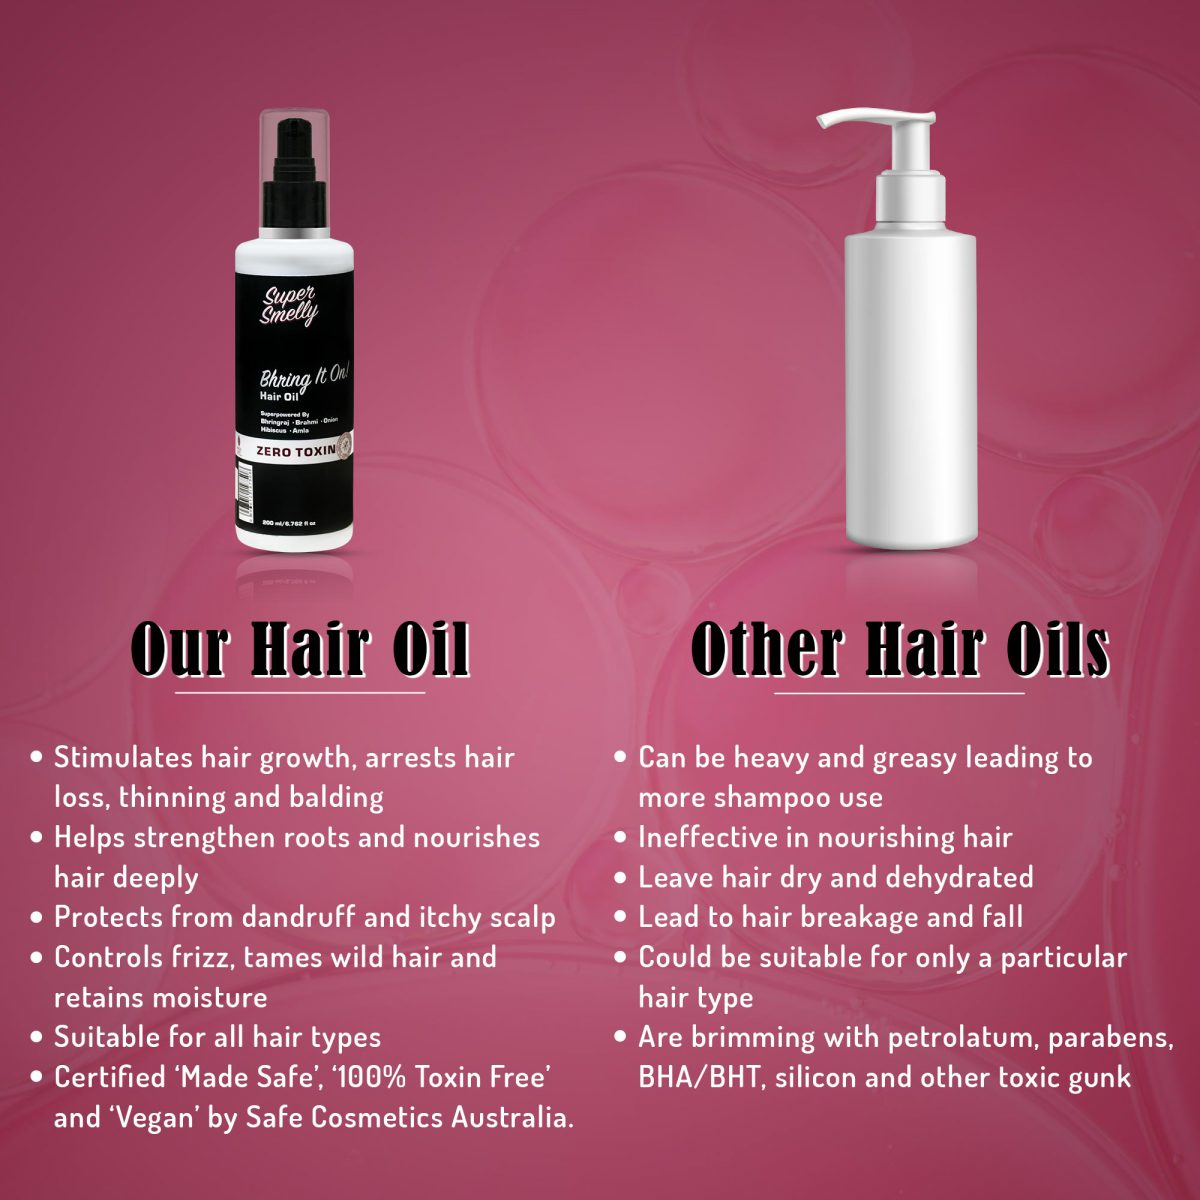 best hair oil for men | natural hair oil of supersmelly | best hair oil for women | Supersmelly bhringraj hair oil